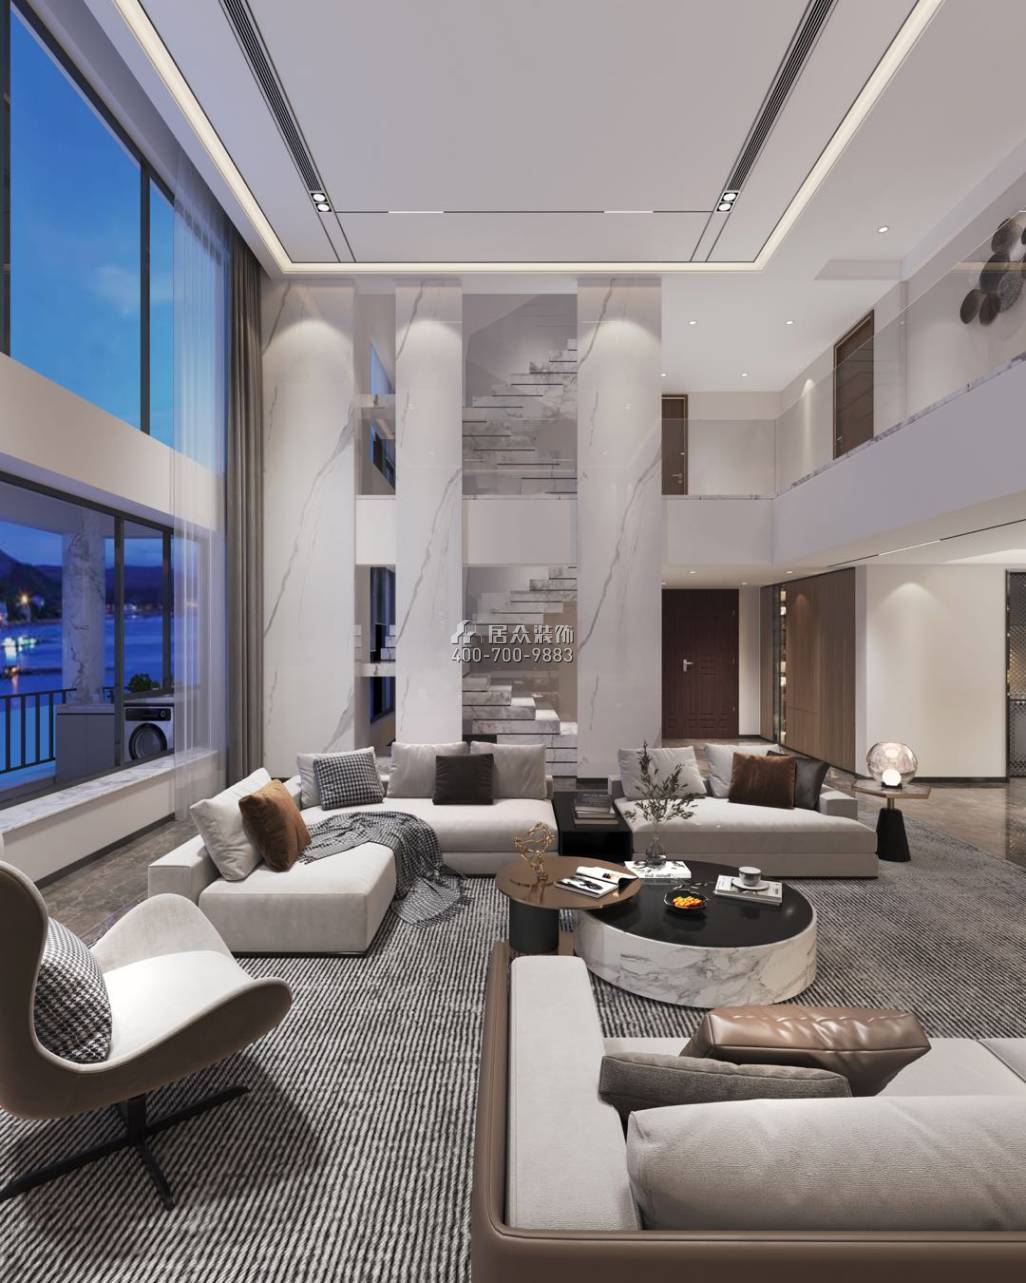 中信红树湾-三期638平方米现代简约风格复式户型客厅装修效果图